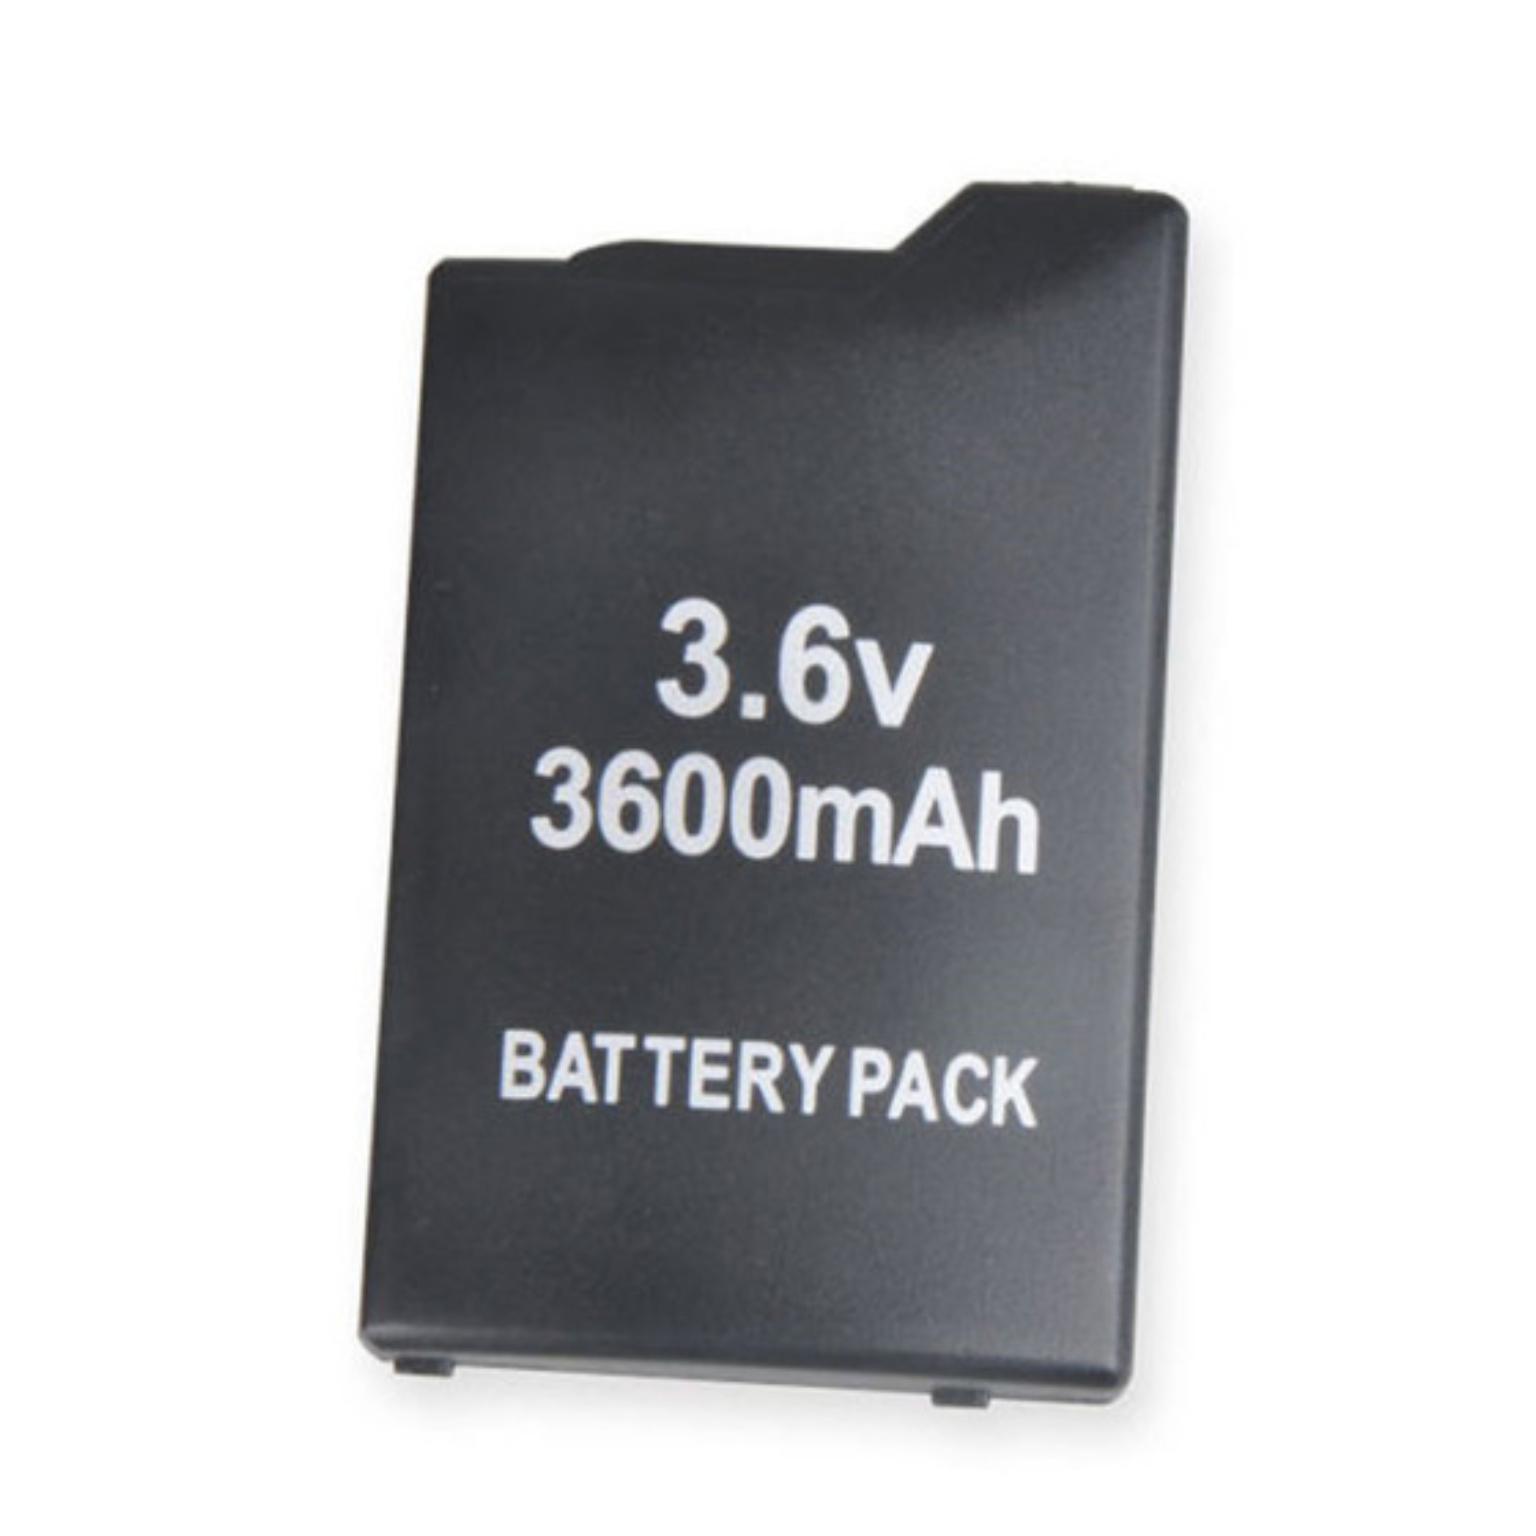 Ontmoedigen Verbeteren Heel Accu Batterij 3600 mAh voor PSP 1000 - 3600 mAh batterij, 3.6V Gewicht: 45  gram. Afmetingen: ca. 36x13x57 mm.